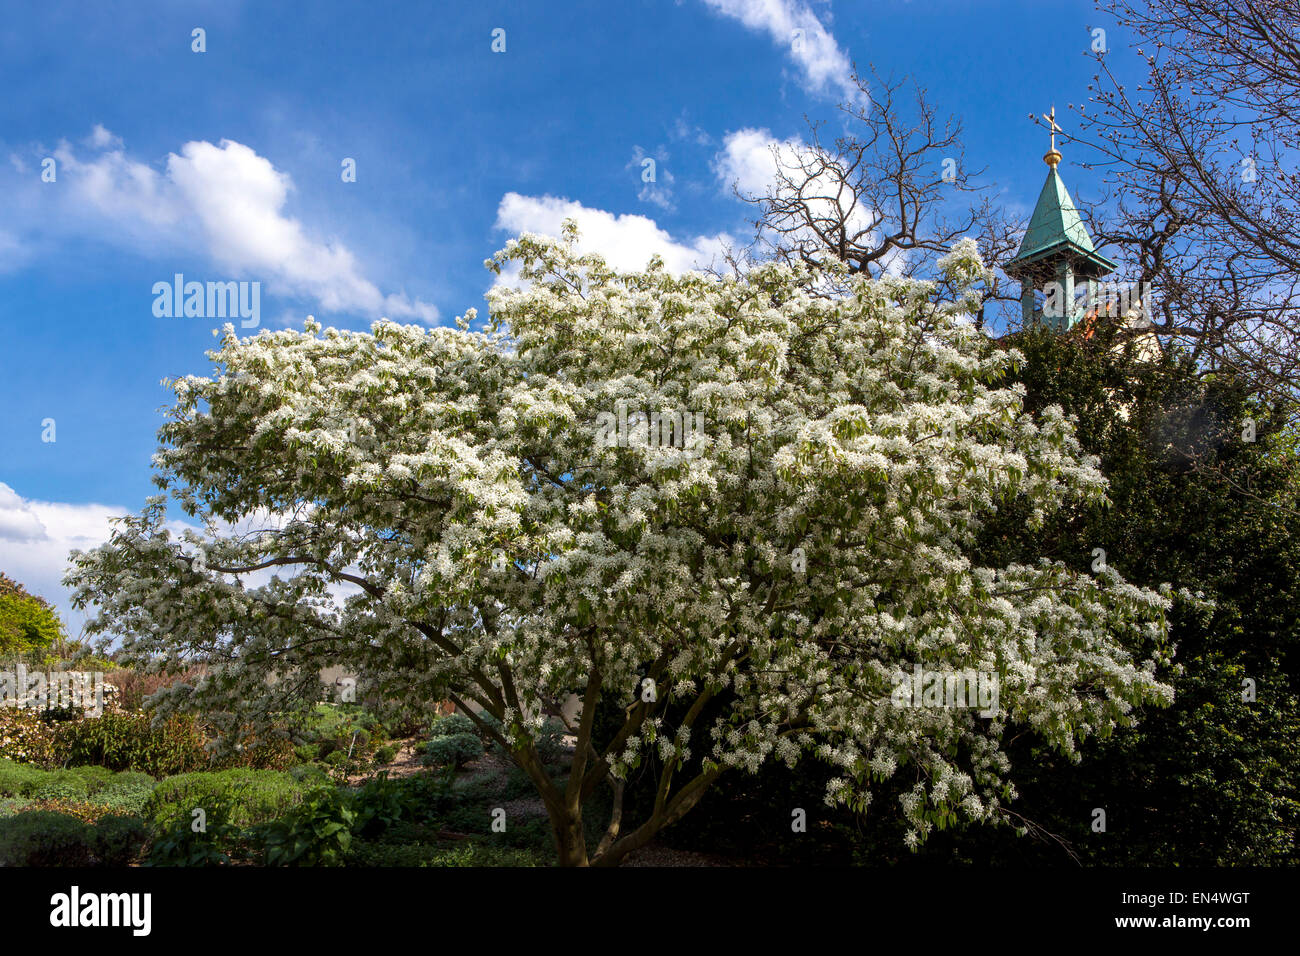 Amelanchier lamarckii shrub, Snowy mespilus spring flowering tree Stock Photo